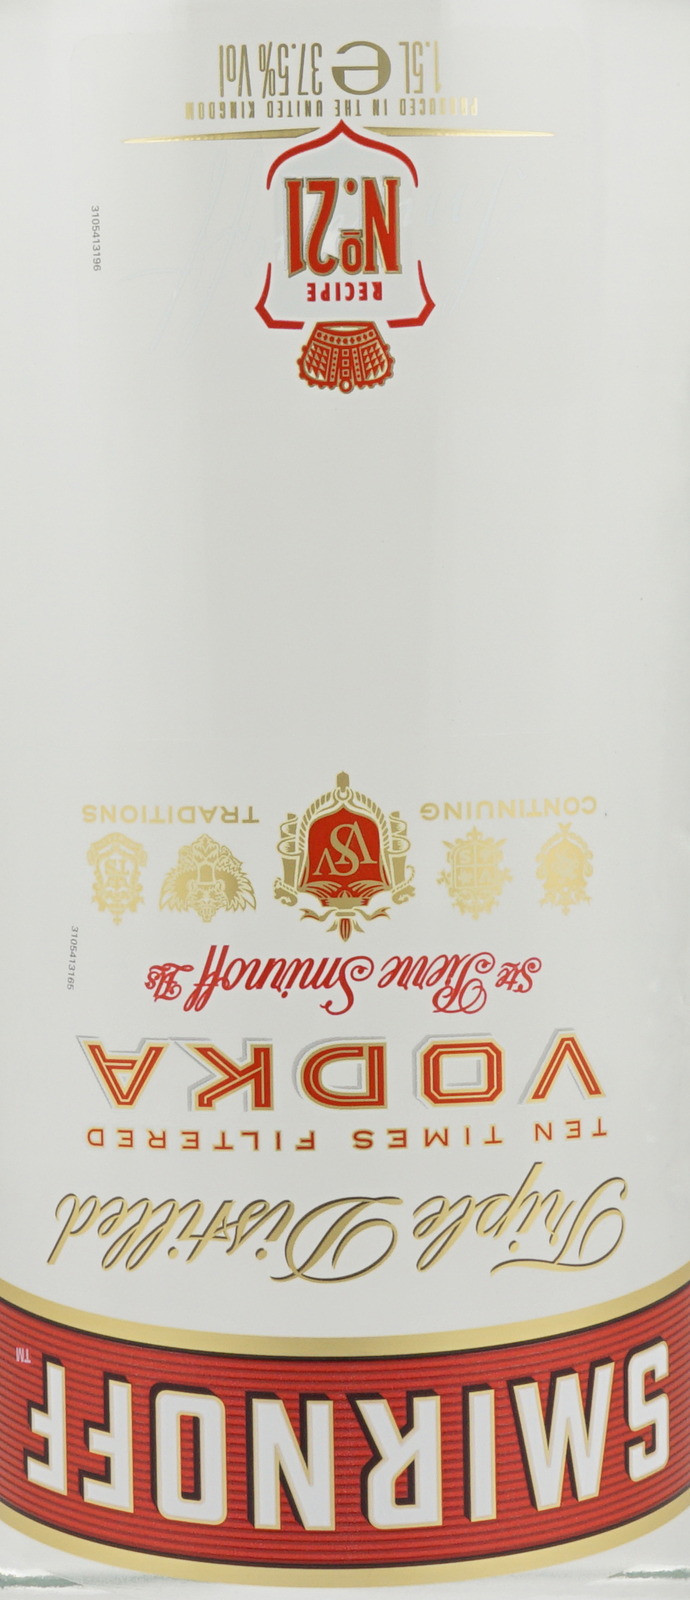 1,5 Label Vodka Flasch Smirnoff der in Red Magnum Liter